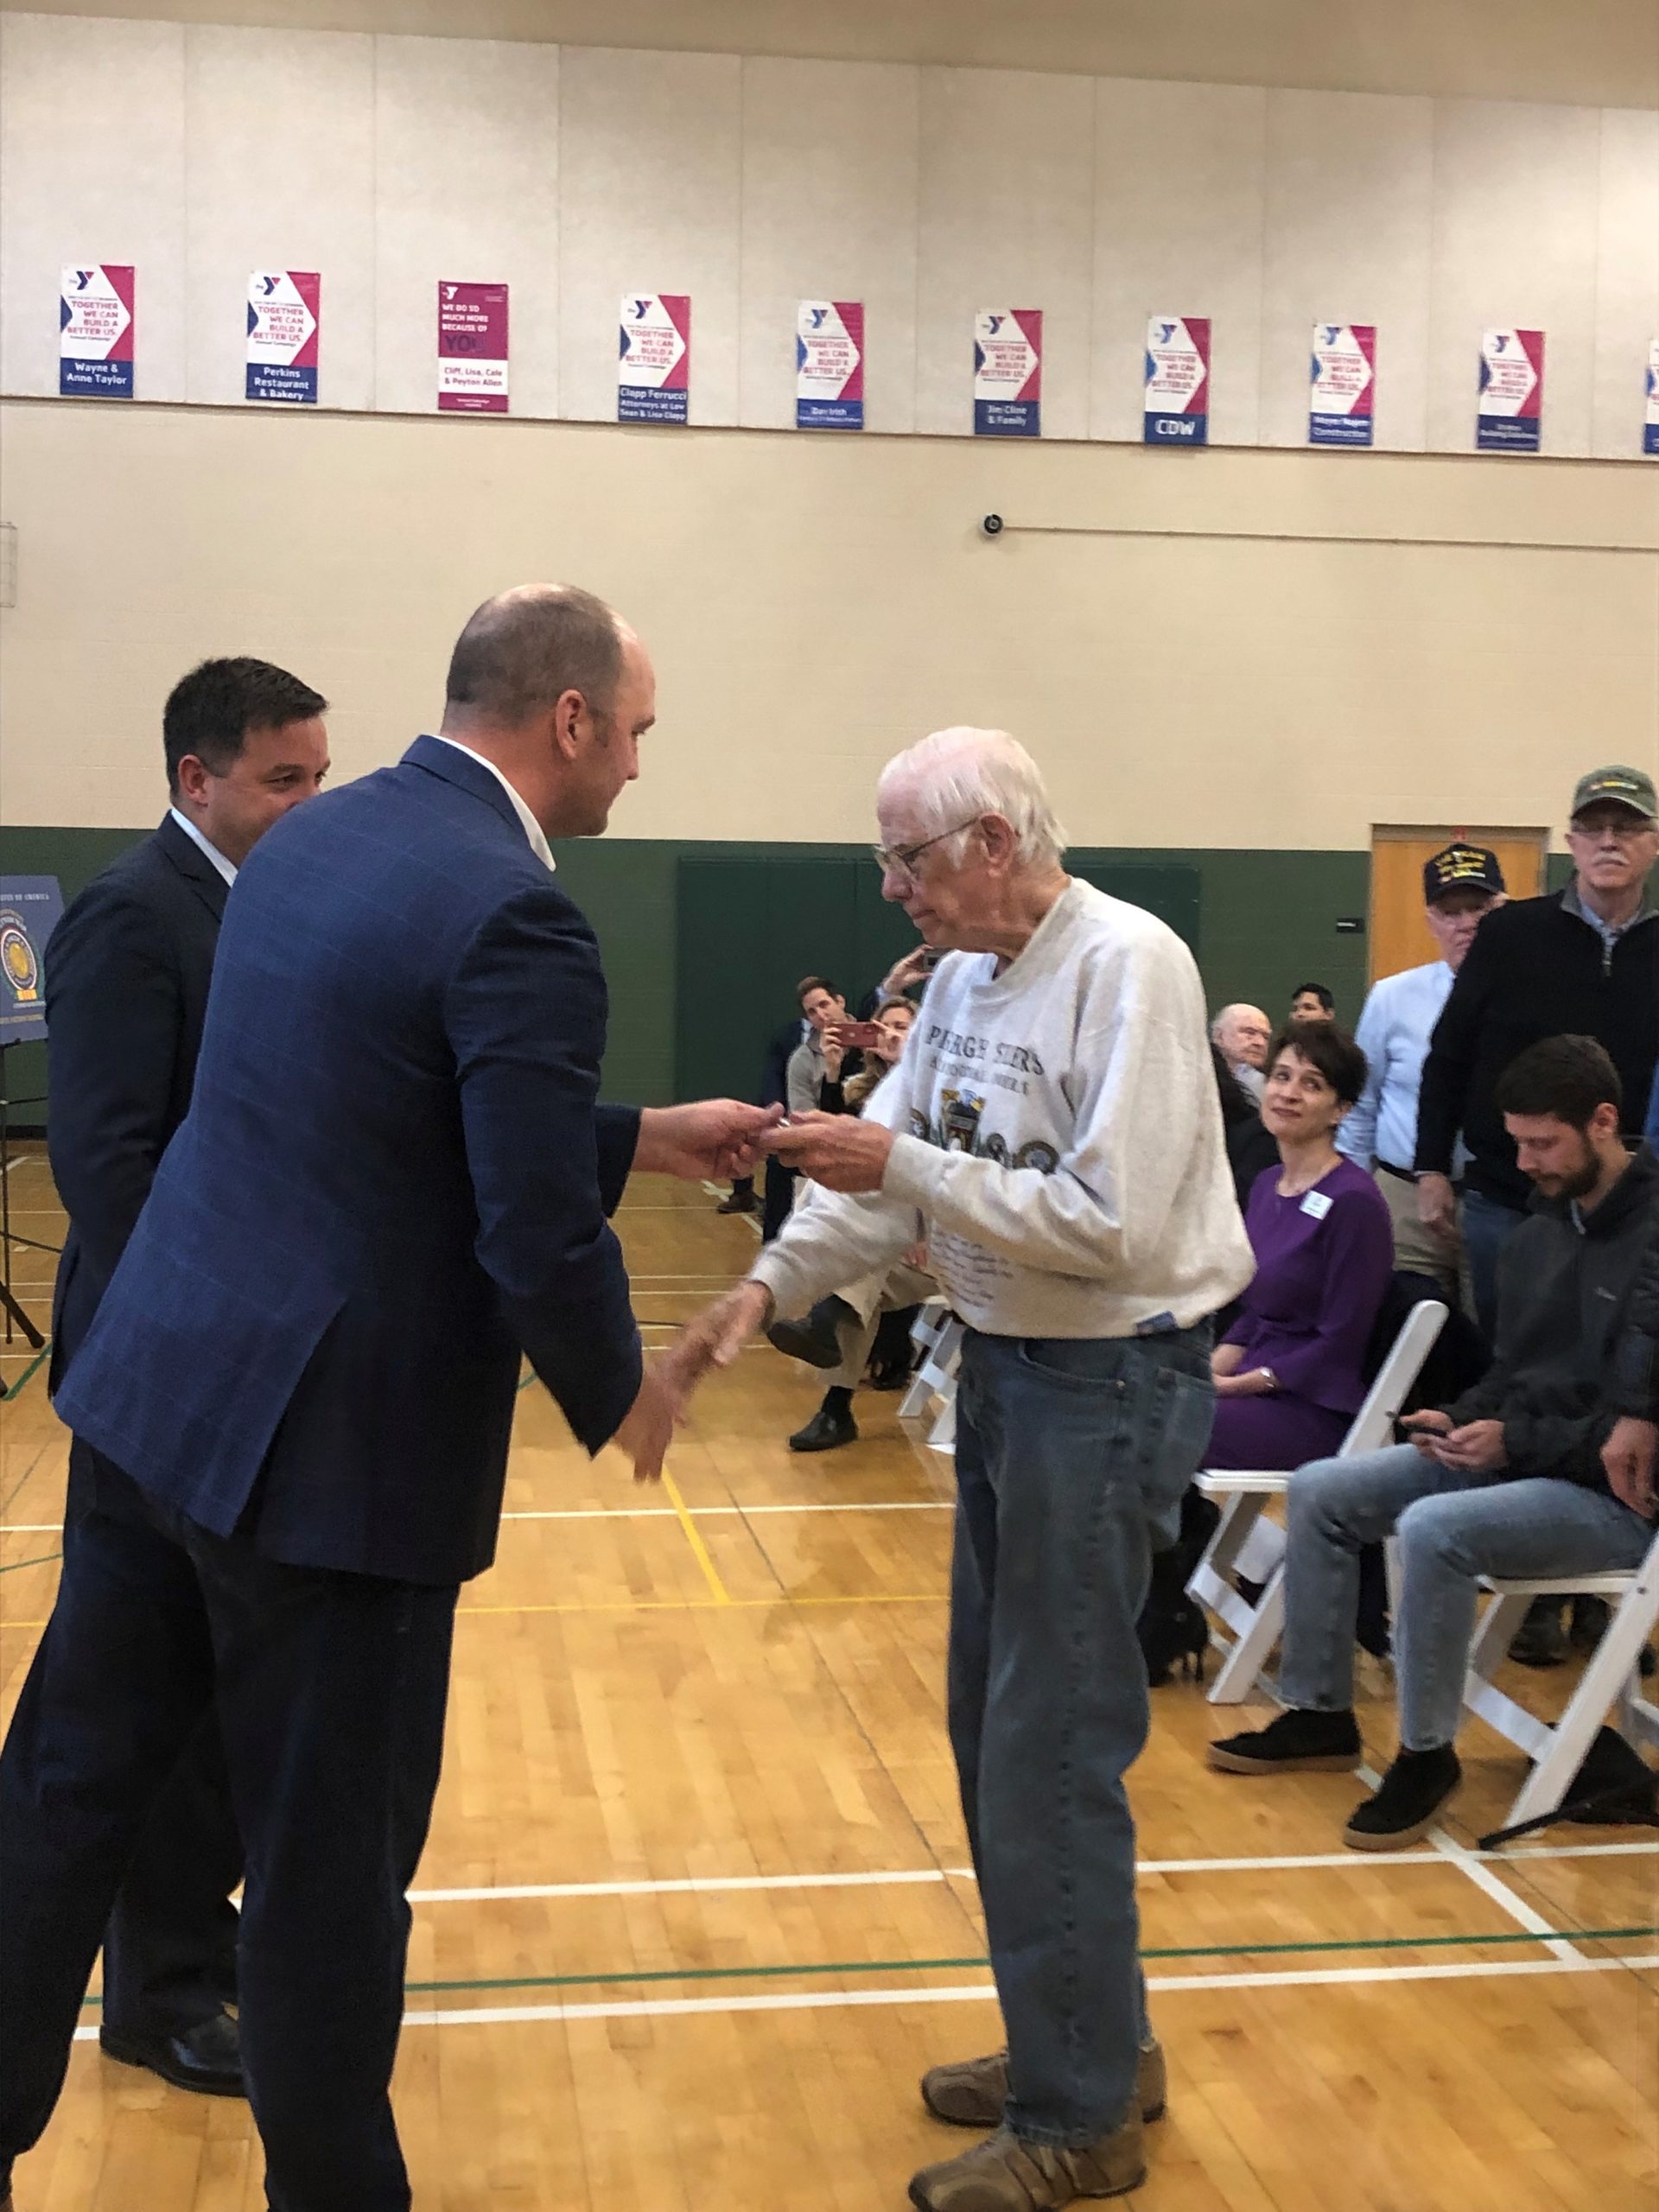 veteran shaking mayor's hand